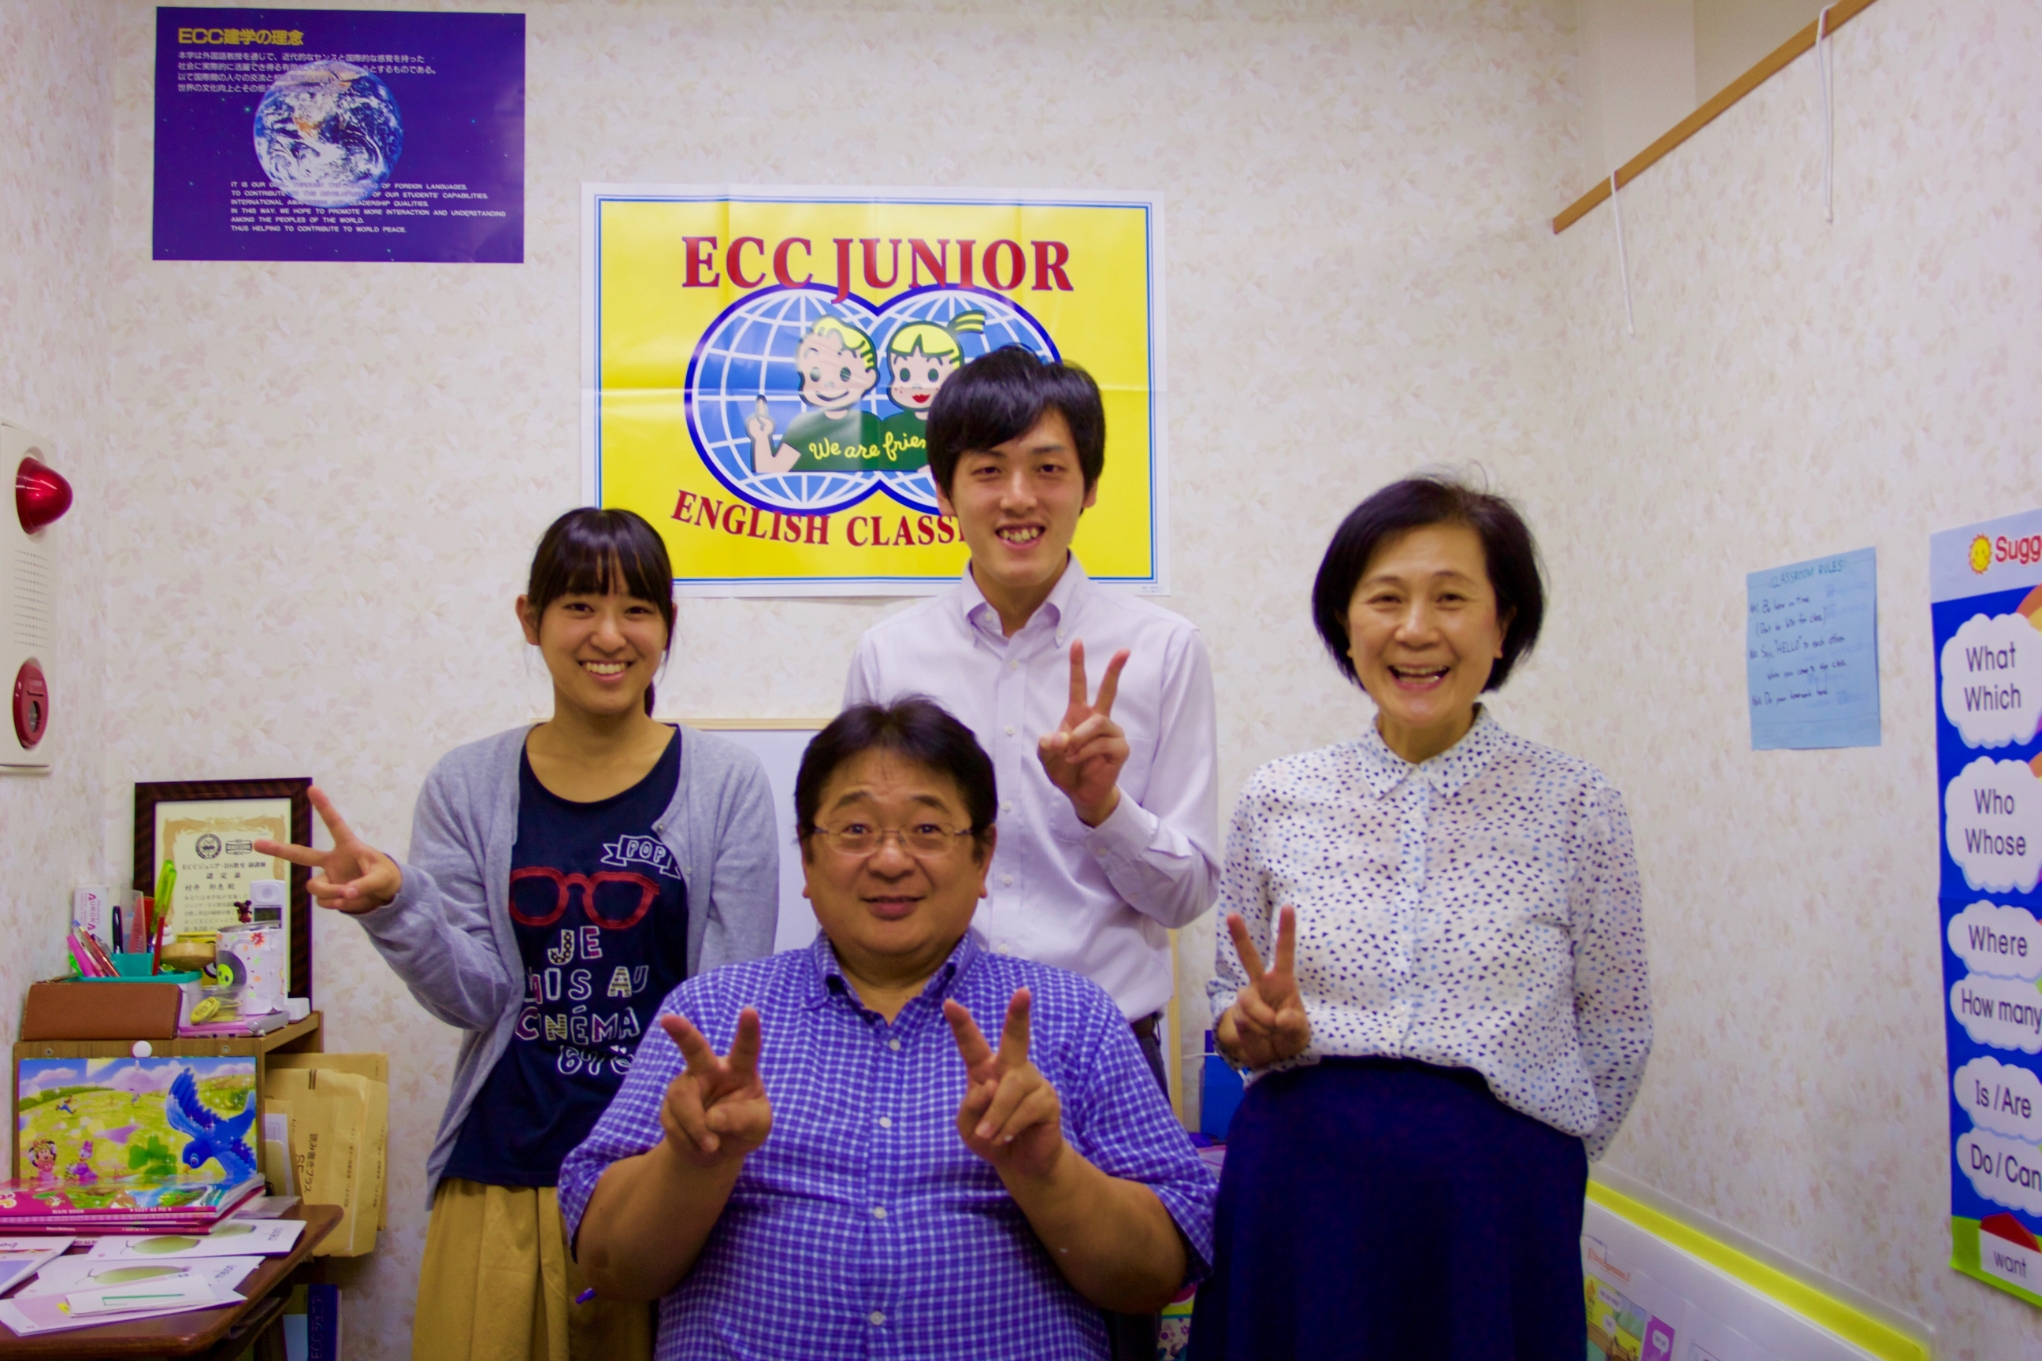 アルバイト 正社員募集 求人 採用 名古屋市の個別指導 学習塾の村井塾